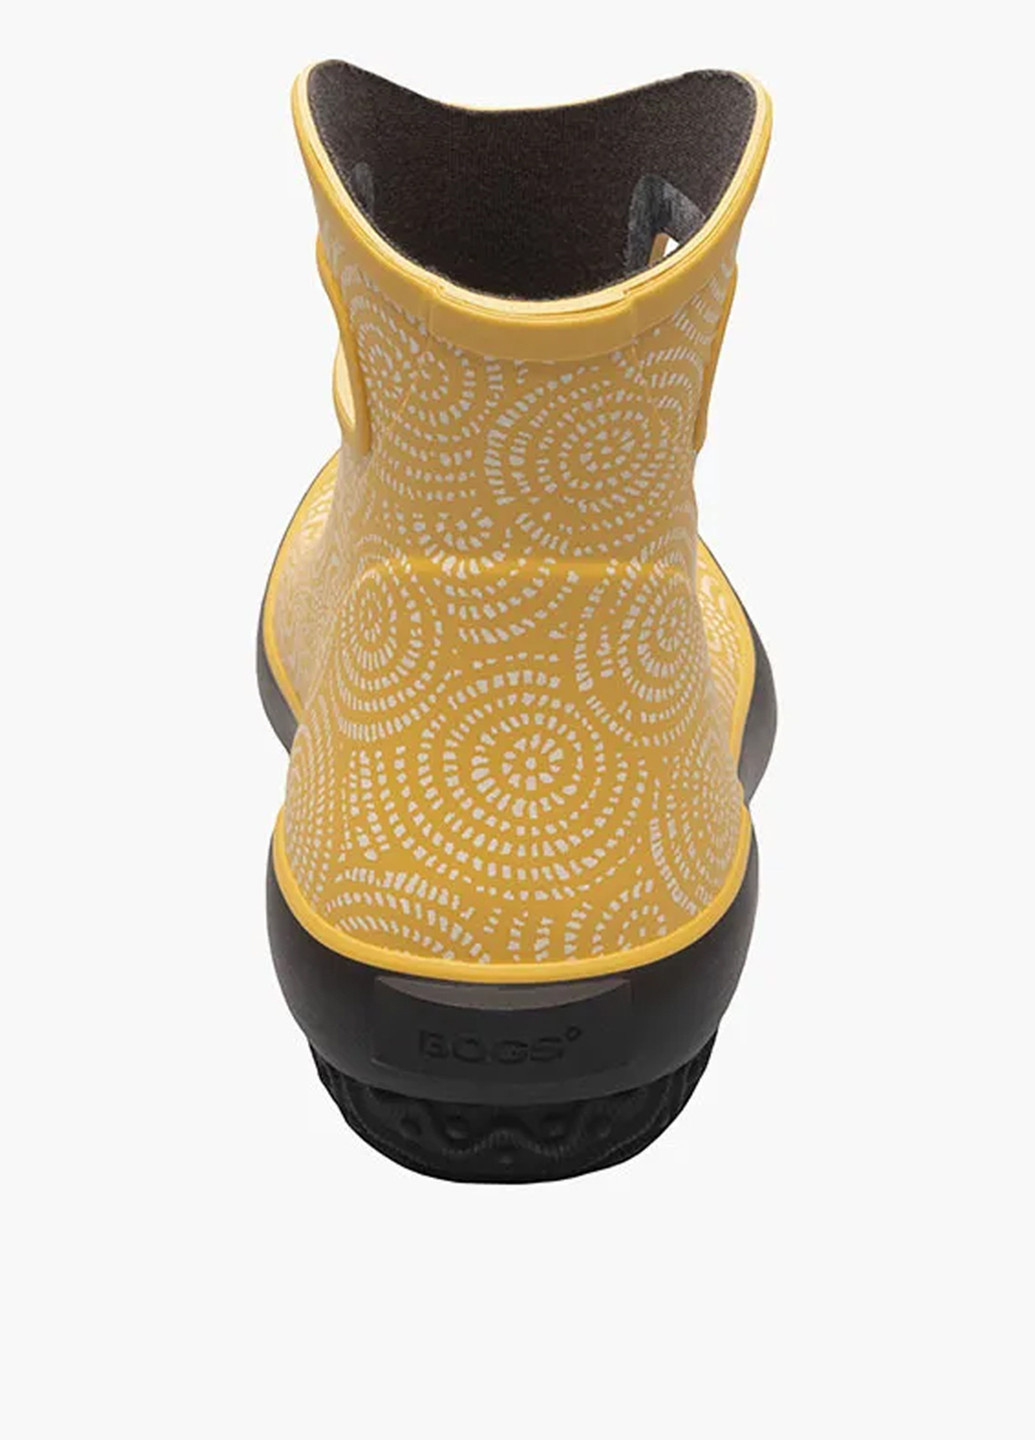 Желтые резиновые ботинки Bogs